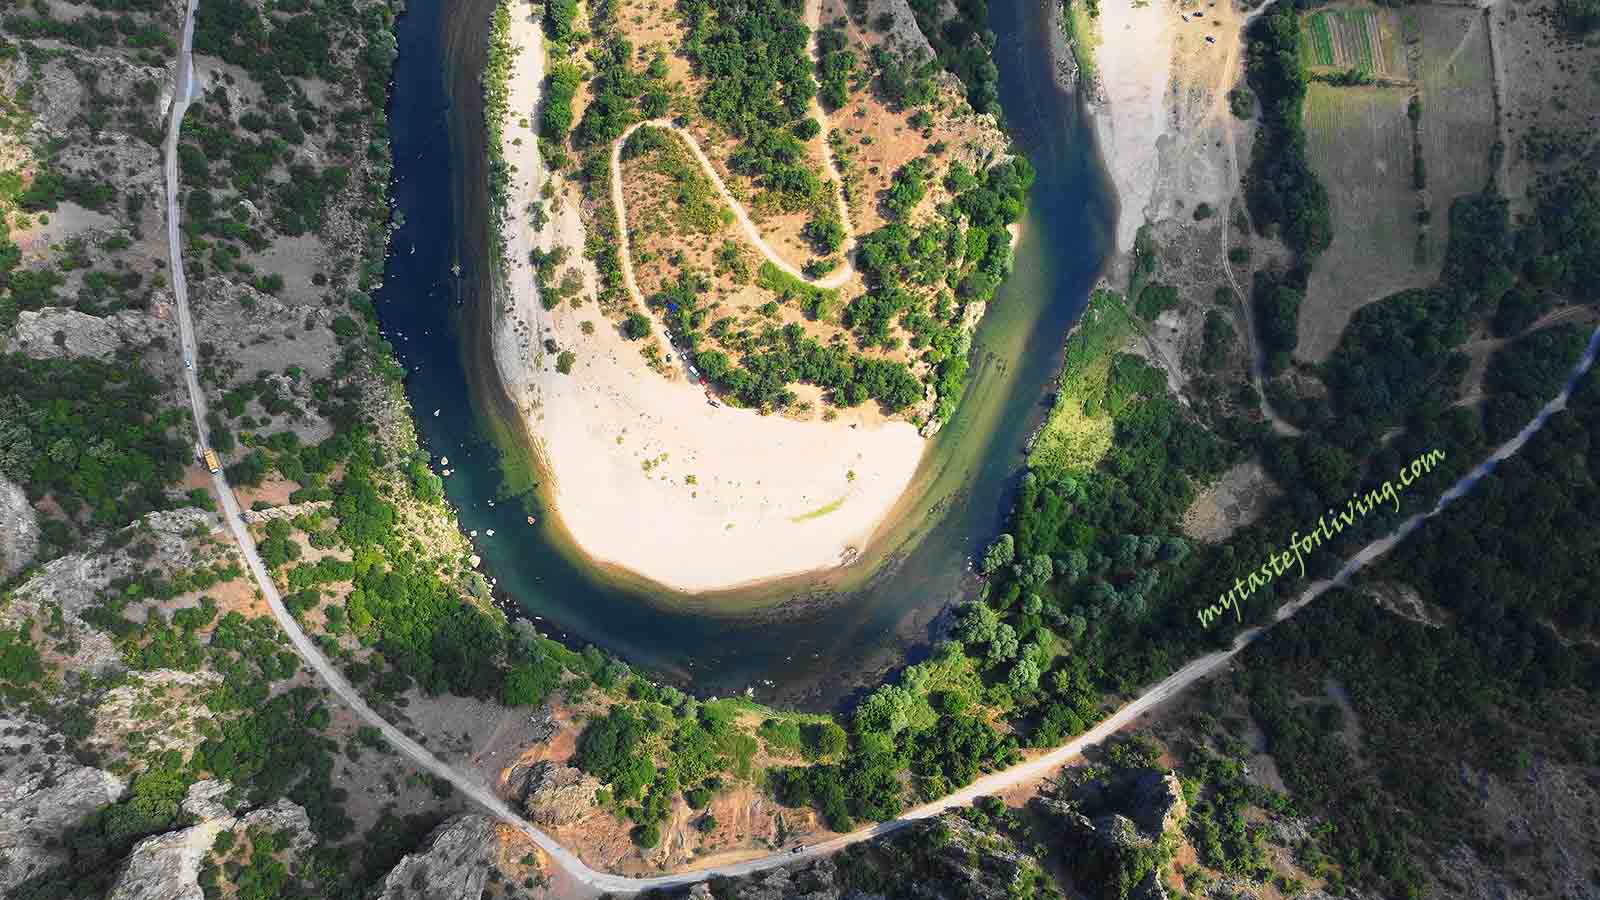 Река Арда извира от Родопите, връх Ардин, и се влива в река Марица на гръцка територия. Тя има много впечатляващи и уникални меандри (извивки на речното корито под формата на подкова). Най-лесно достъпният е меандърът край град Маджарово, където водата прави 180 градусов живописен завой. Намира се между Маджарово и Бориславци и определено си заслужава да се полюбувате на гледката му. 